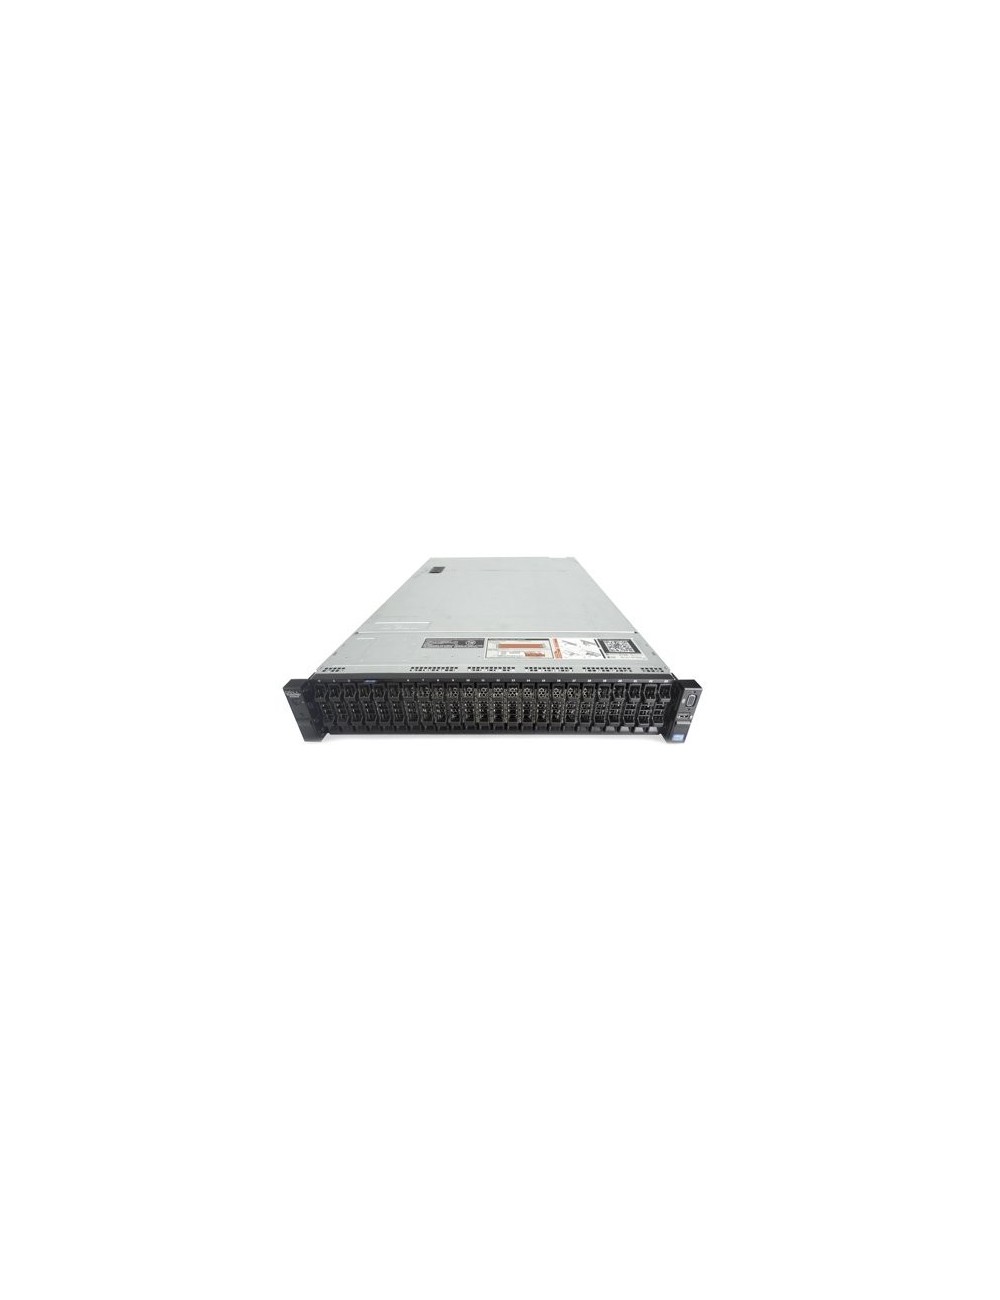 Dell PowerEdge R720xd 24x SFF, 2x E5-2670 V2 10C, 256GB RAM, 21,6 TB RAW 10K SAS HDD, H710P 1GB, 2x PSU, Rail Kit